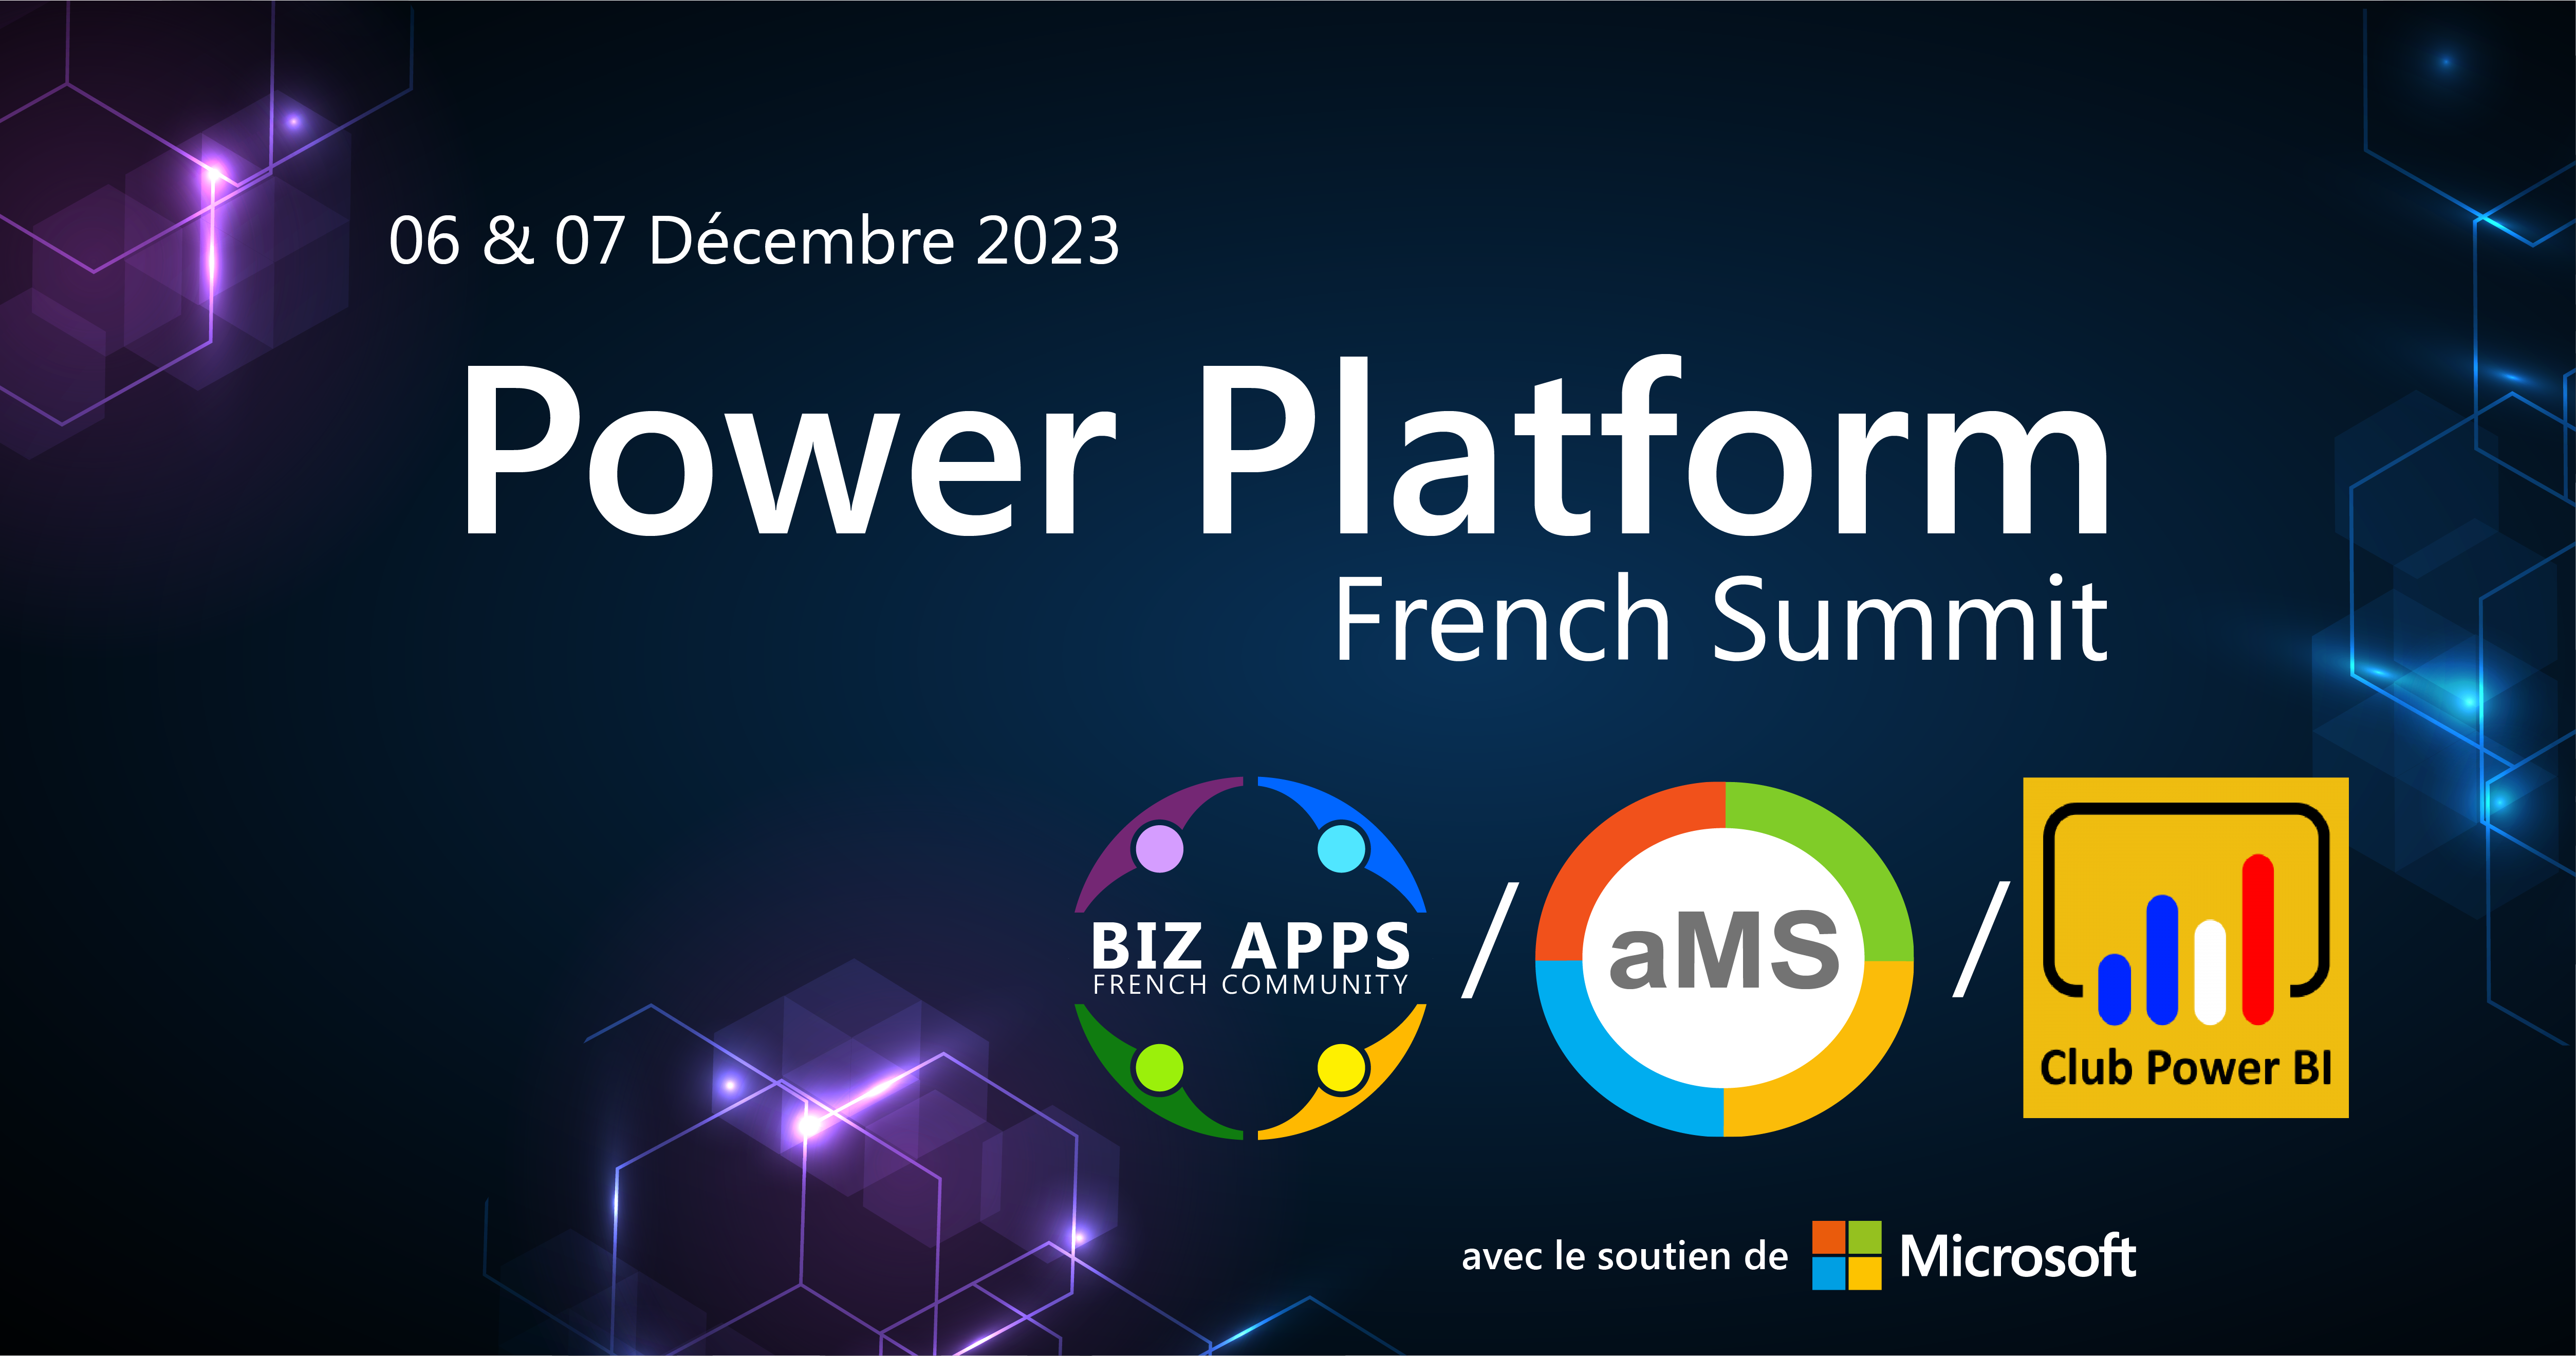 DevPoint est partenaire Silver pour le PowerPlatform French Summit 2023